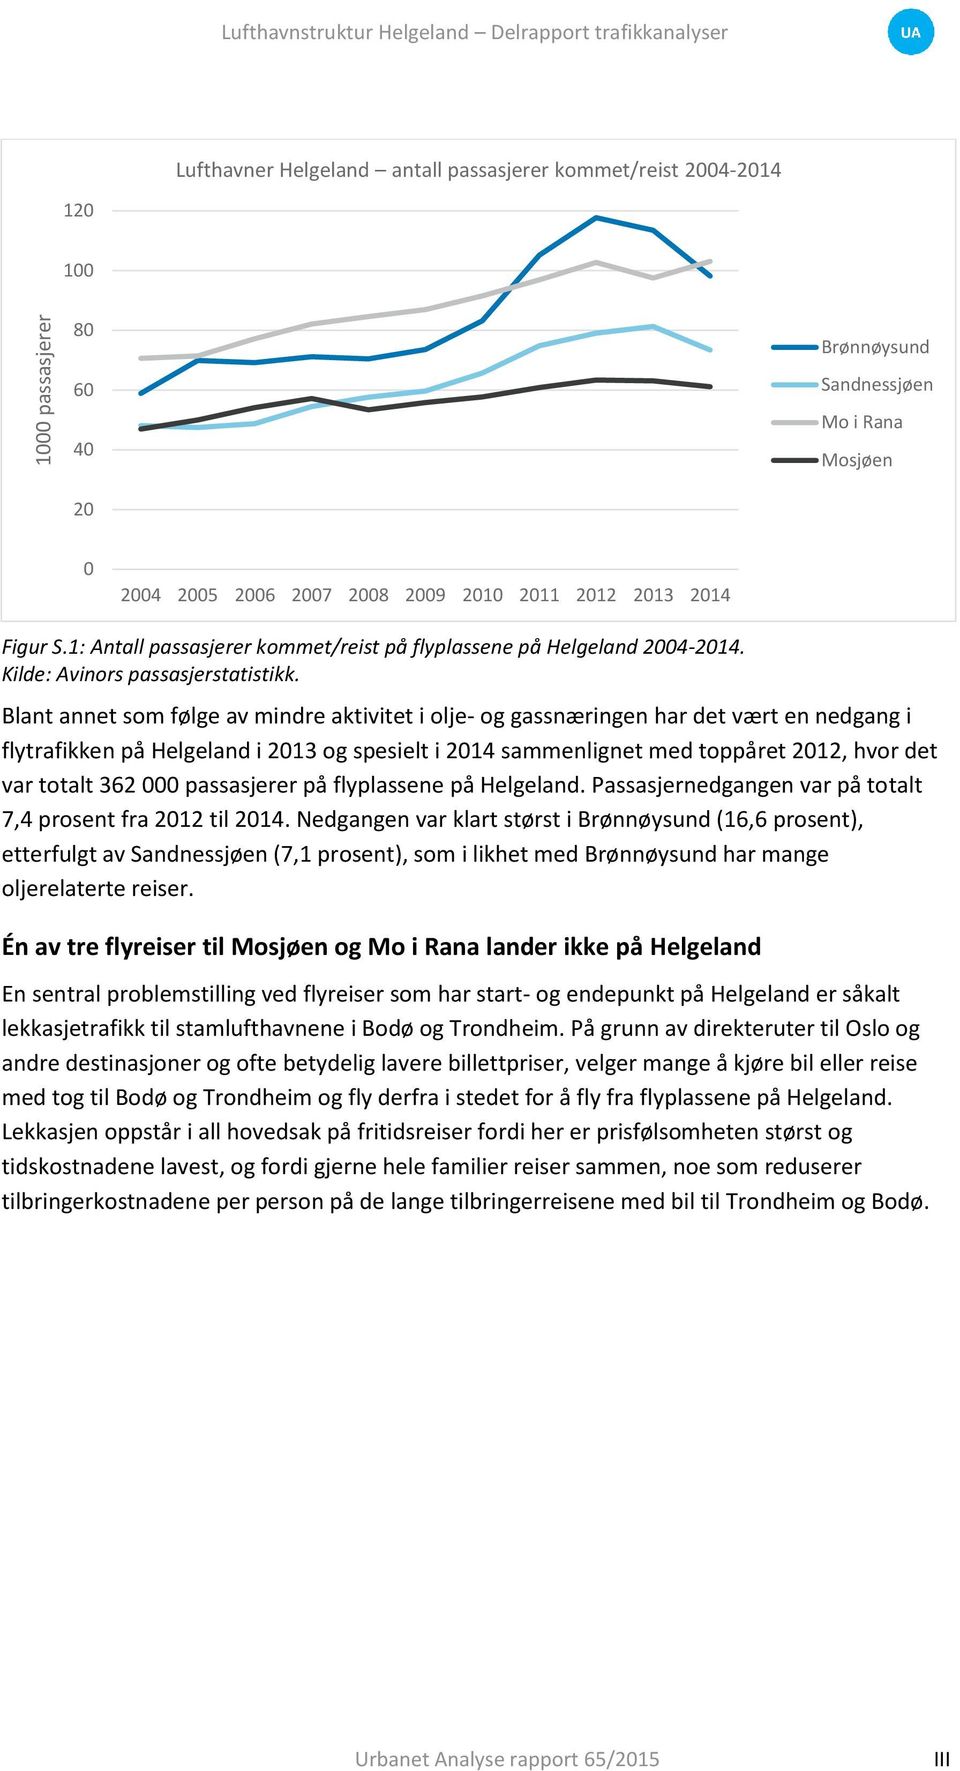 Blant annet som følge av mindre aktivitet i olje- og gassnæringen har det vært en nedgang i flytrafikken på Helgeland i 2013 og spesielt i 2014 sammenlignet med toppåret 2012, hvor det var totalt 362